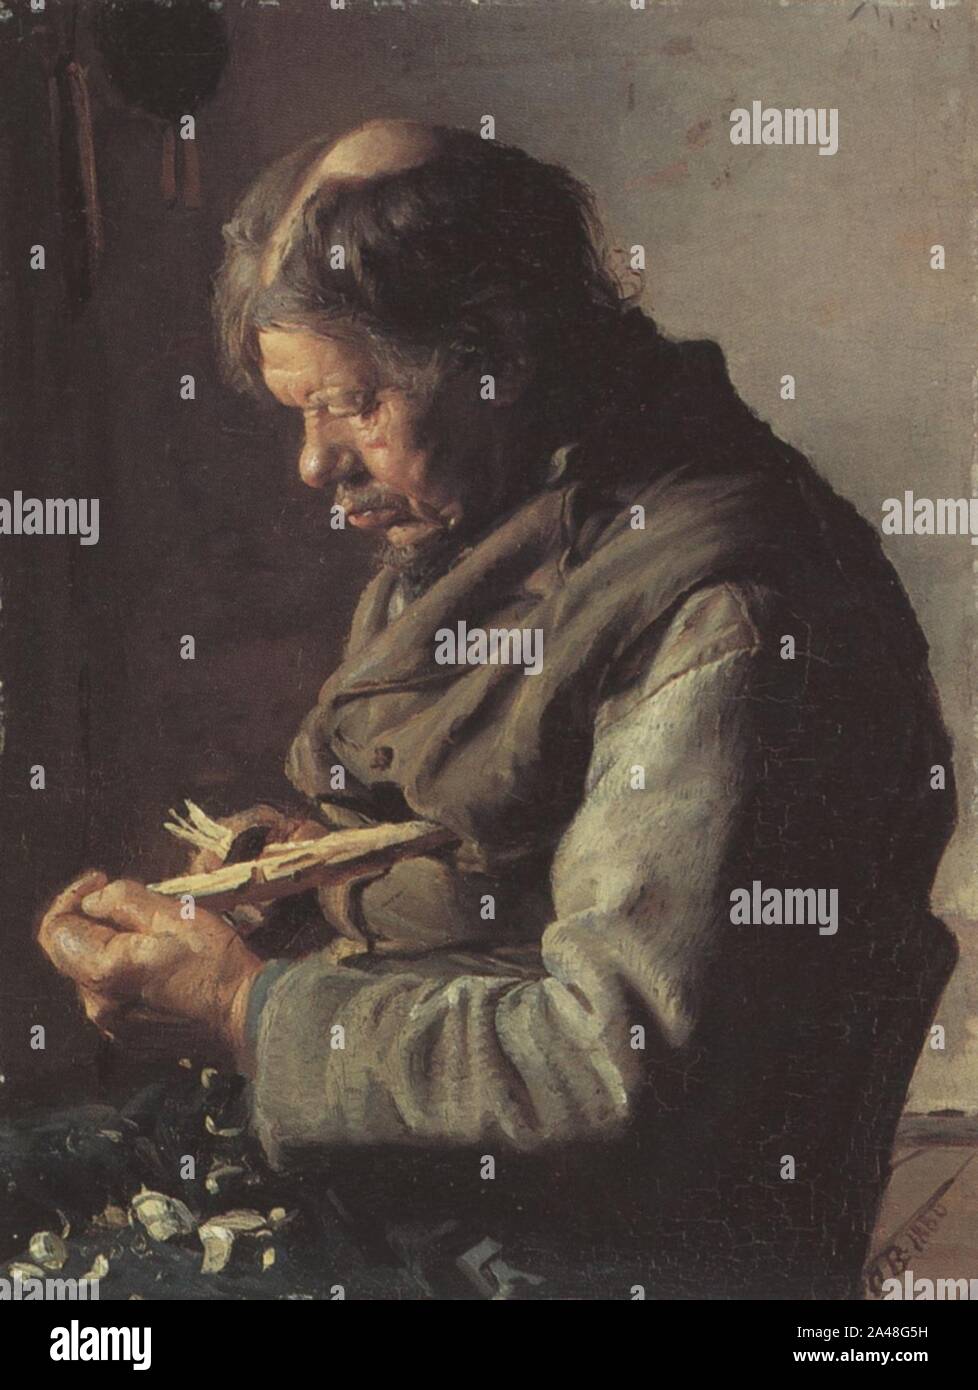 Fisker Lars Gaihede snitter en pind (Anna Ancher). Stock Photo